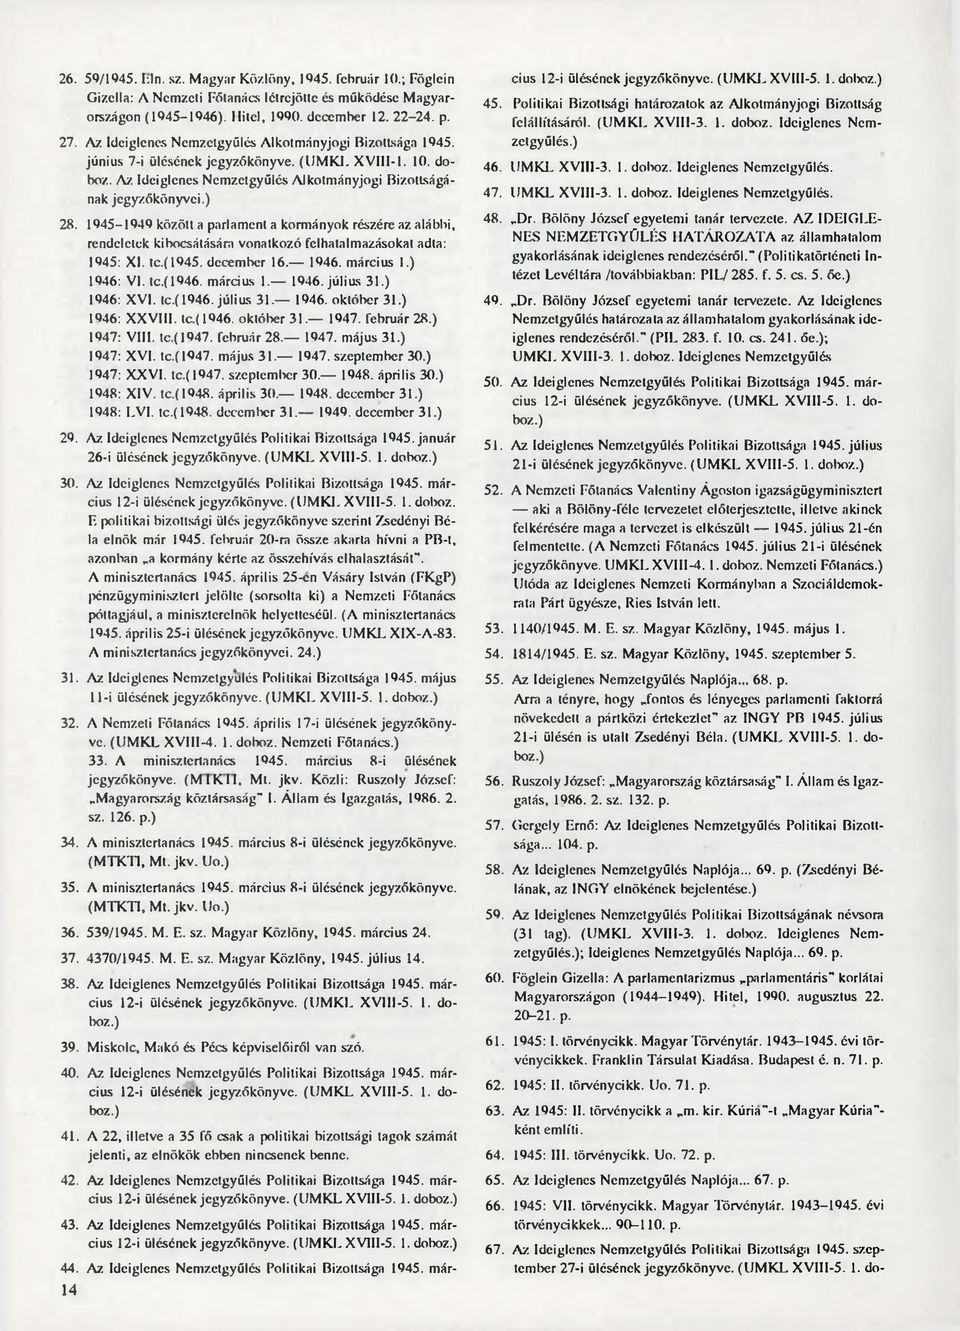 1945-1949 között a parlament a kormányok részére az alábbi, rendelctek kibocsátására vonatkozó felhatalmazásokat adta: 1945: XI. tc.(1945. december 16. 1946. március I.) 1946: VI. tc.(1946. március 1.